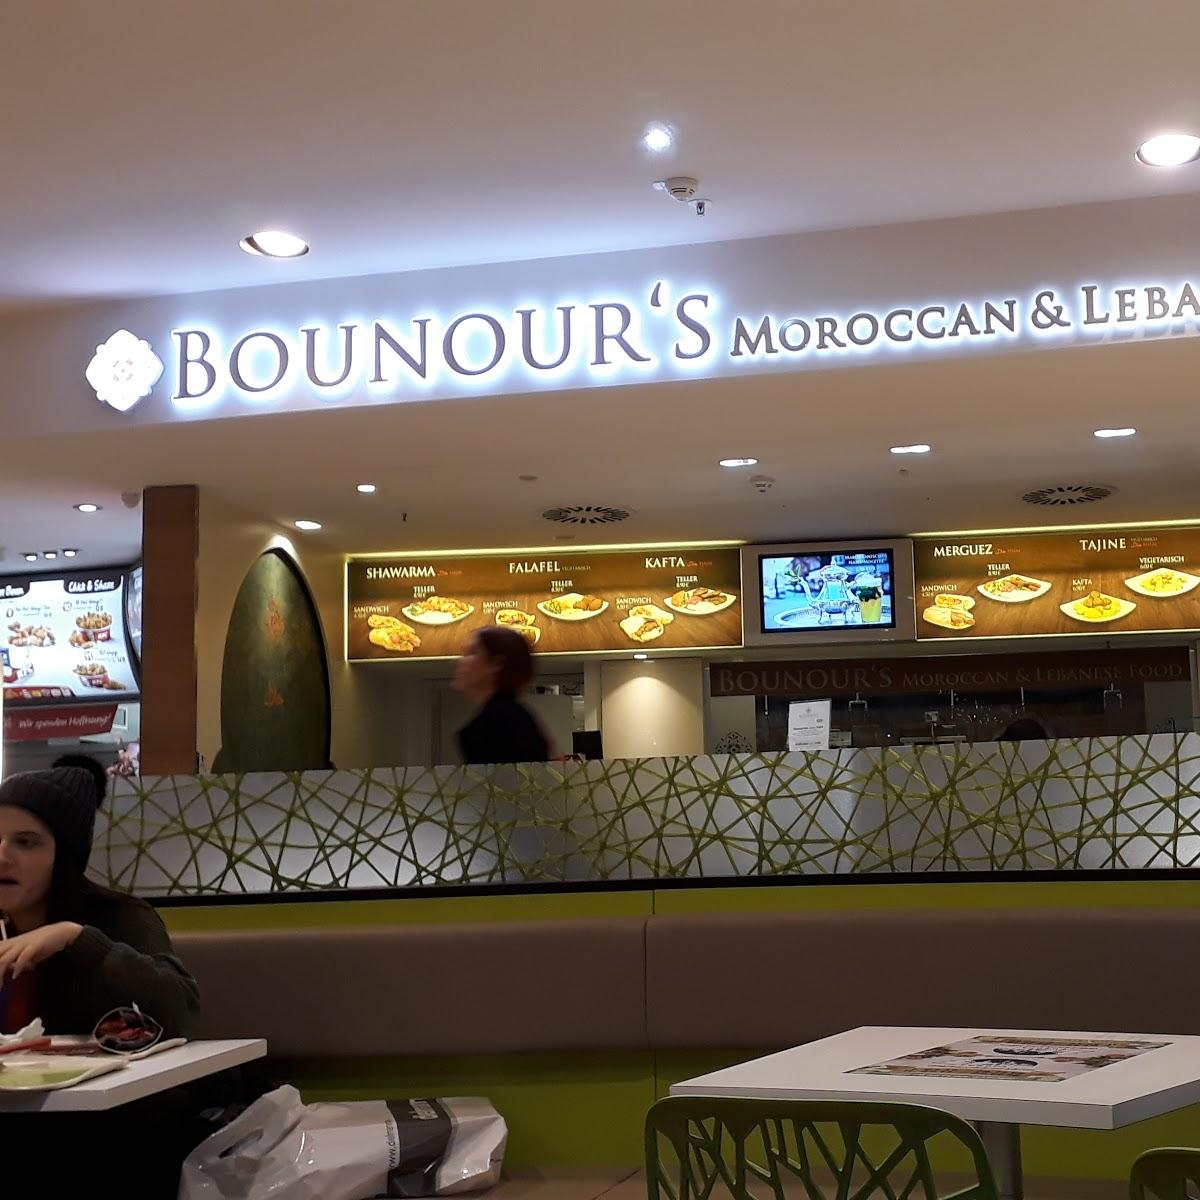 Restaurant "Bounour